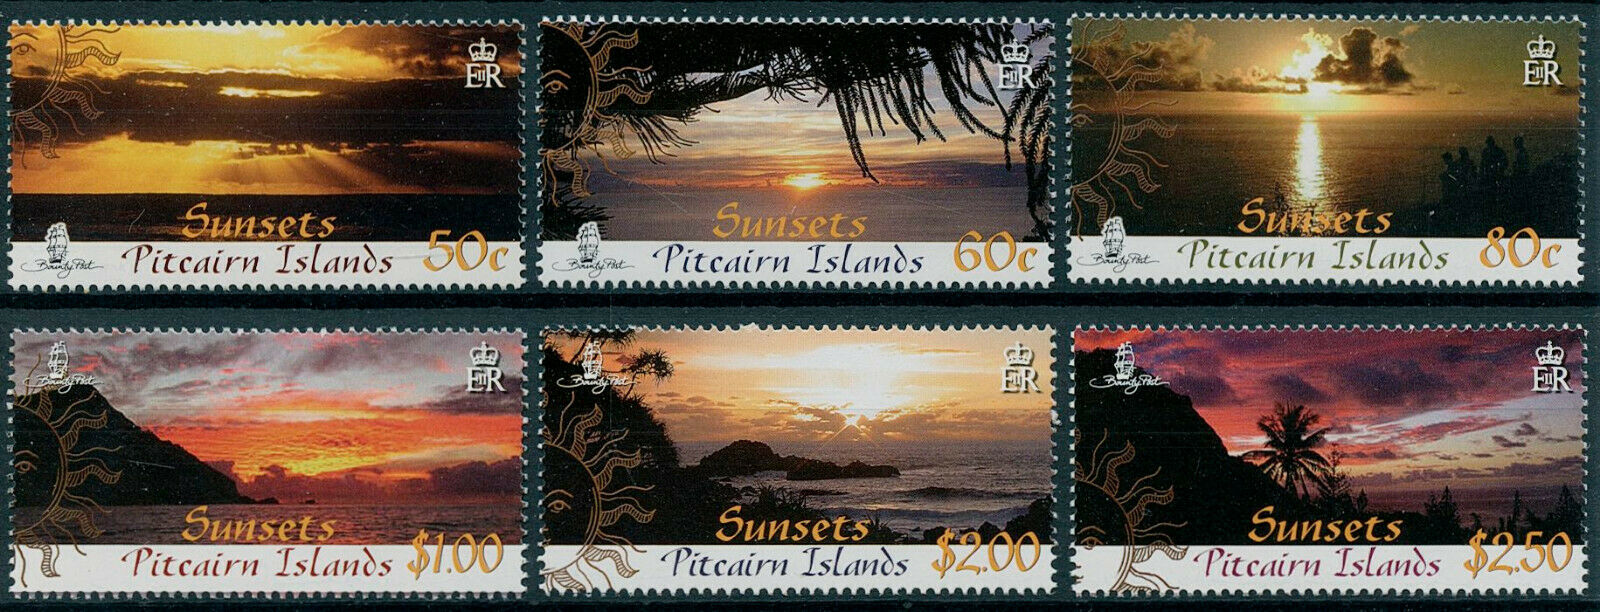 Pitcairn Islands 2008 MNH Landscapes Stamps Sunsets Tourism Palm Trees 6v Set